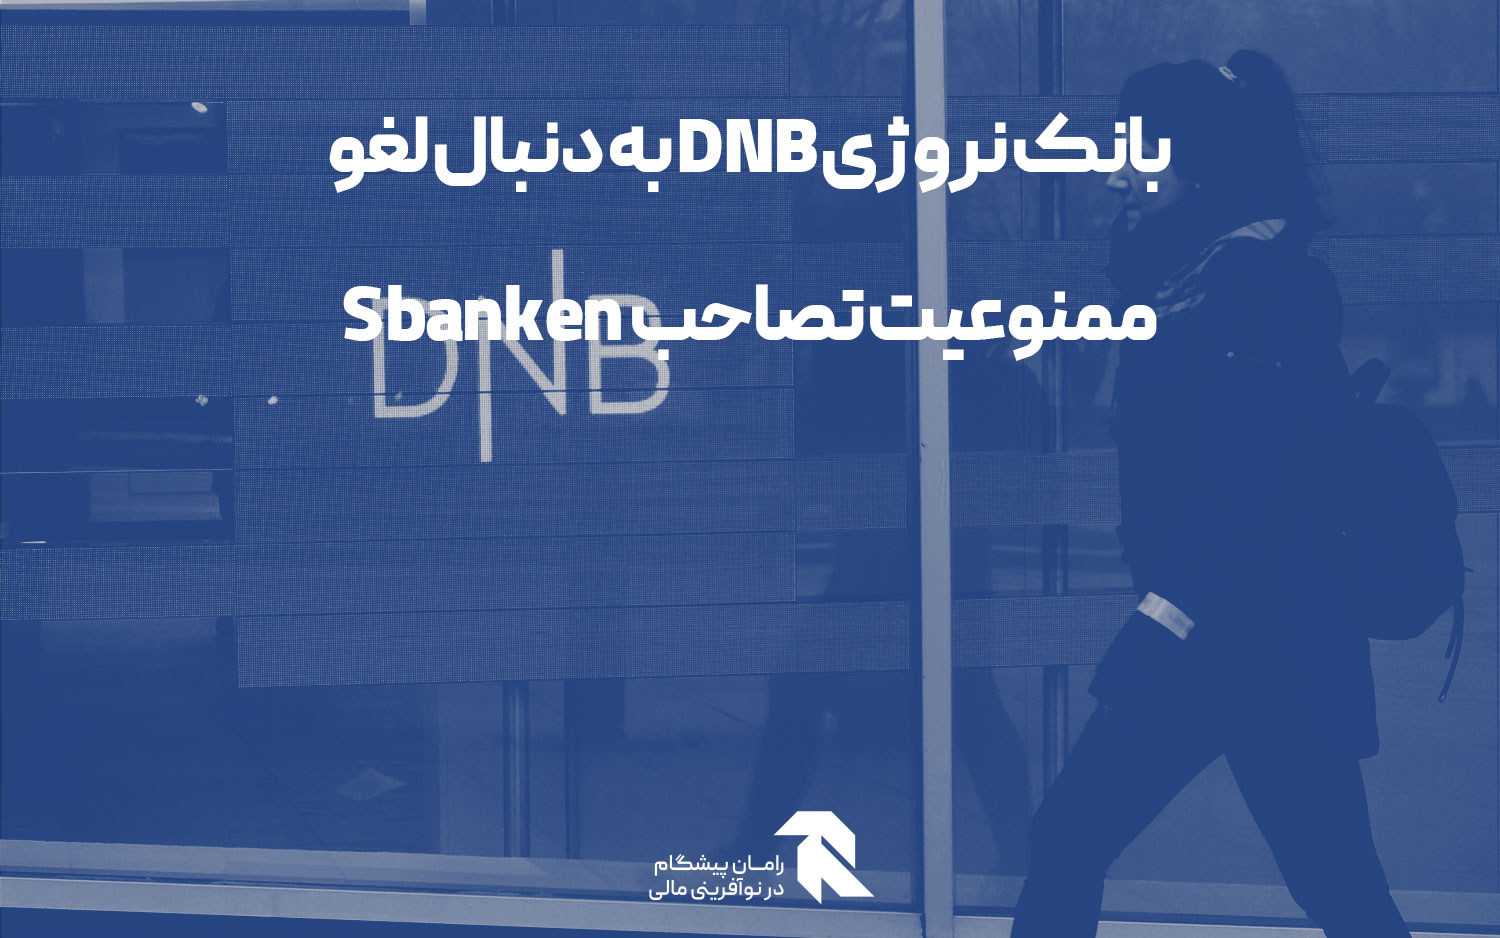 بانک نروژی DNB به دنبال لغو ممنوعیت تصاحب Sbanken